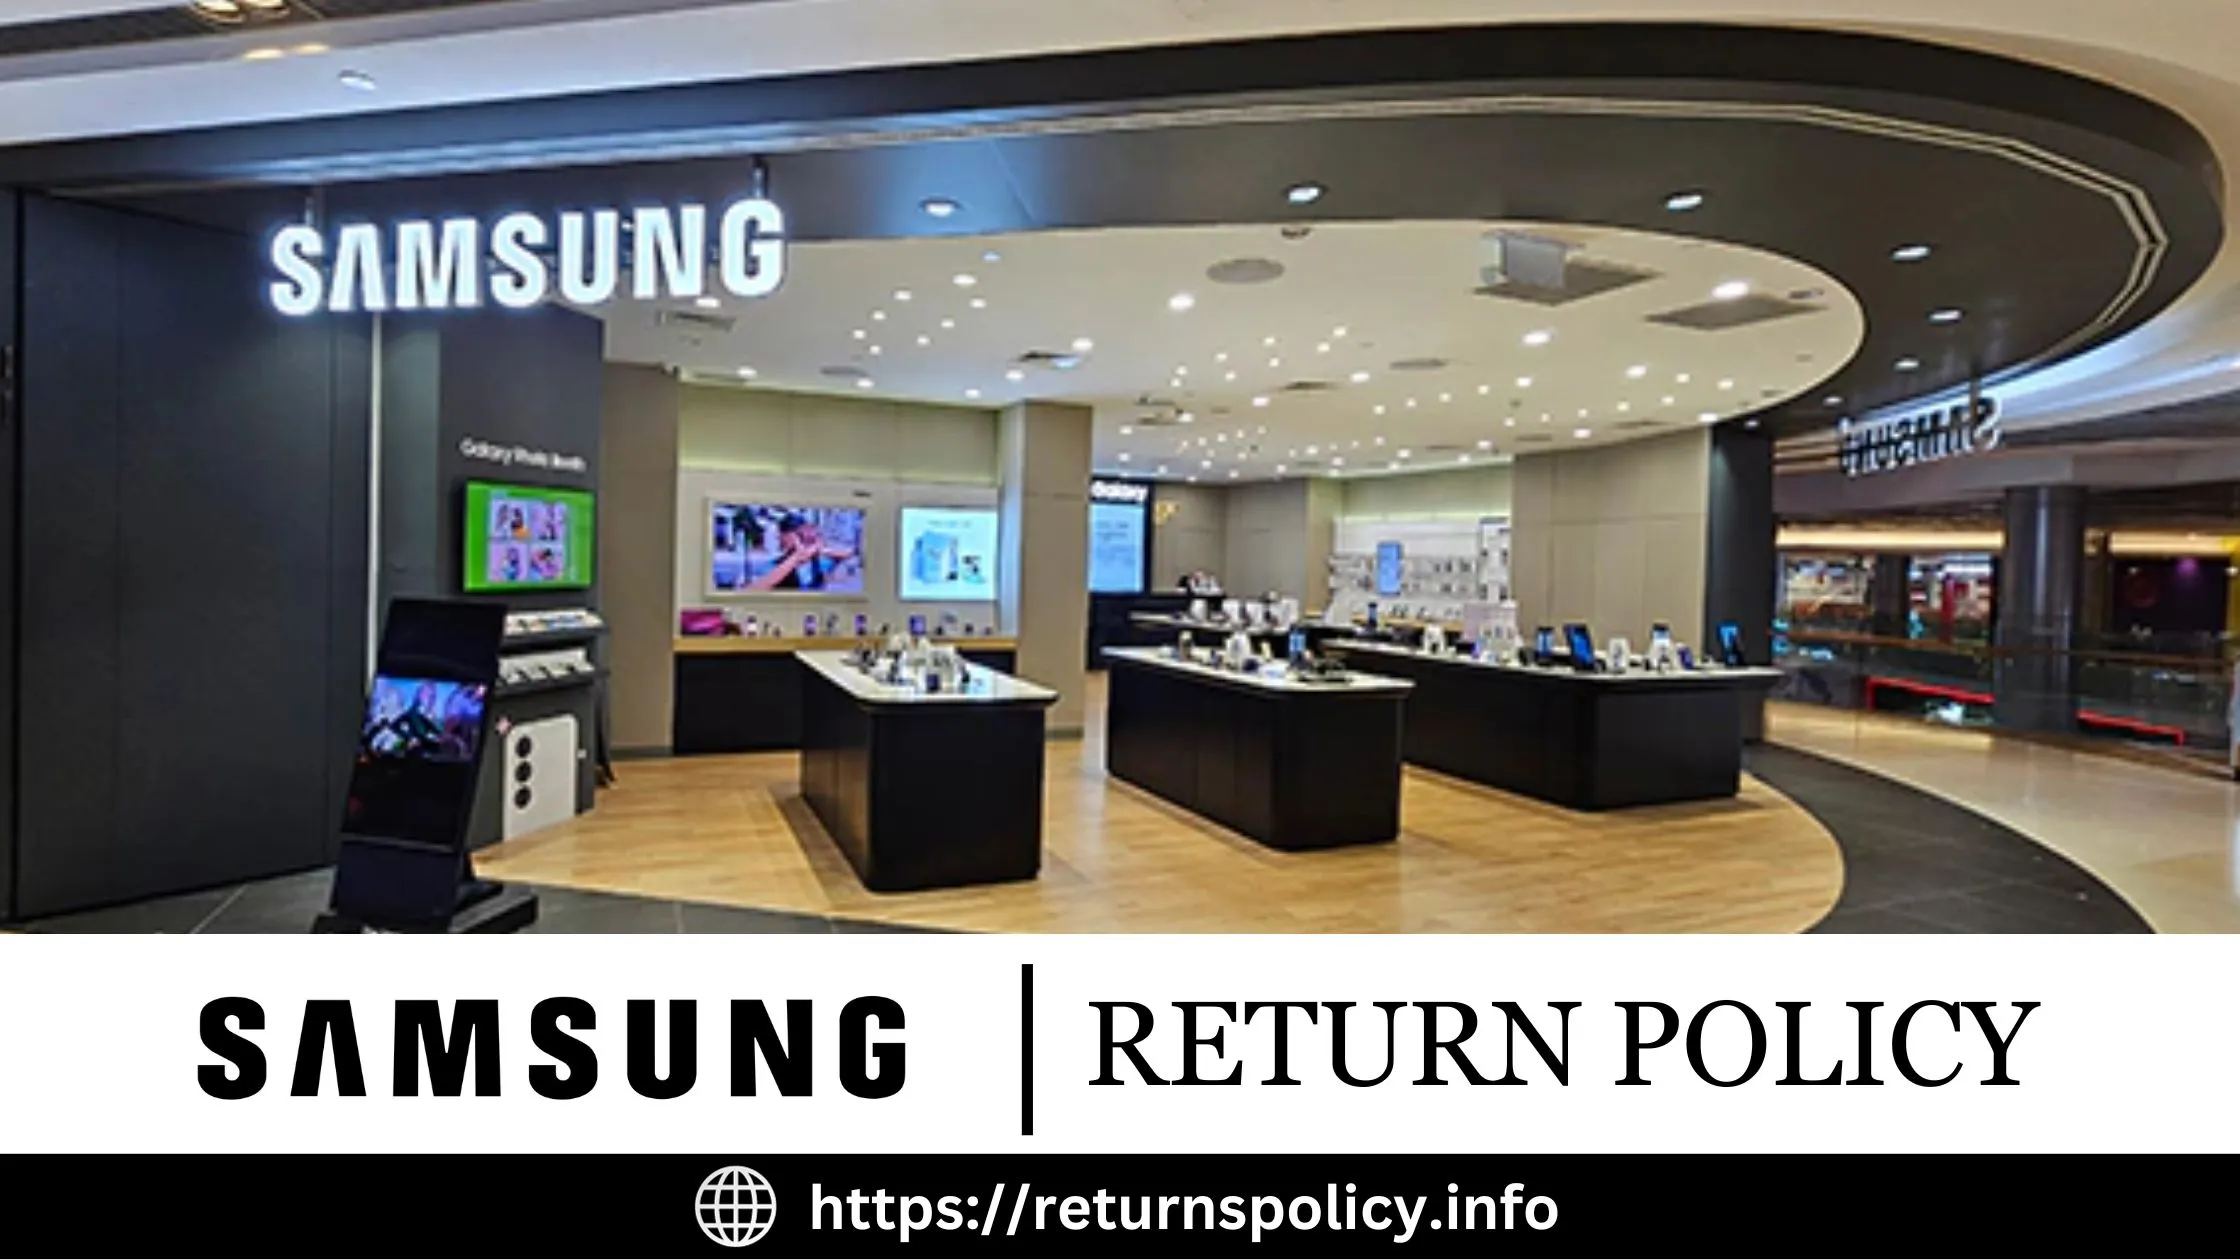 Samsung Return Policy